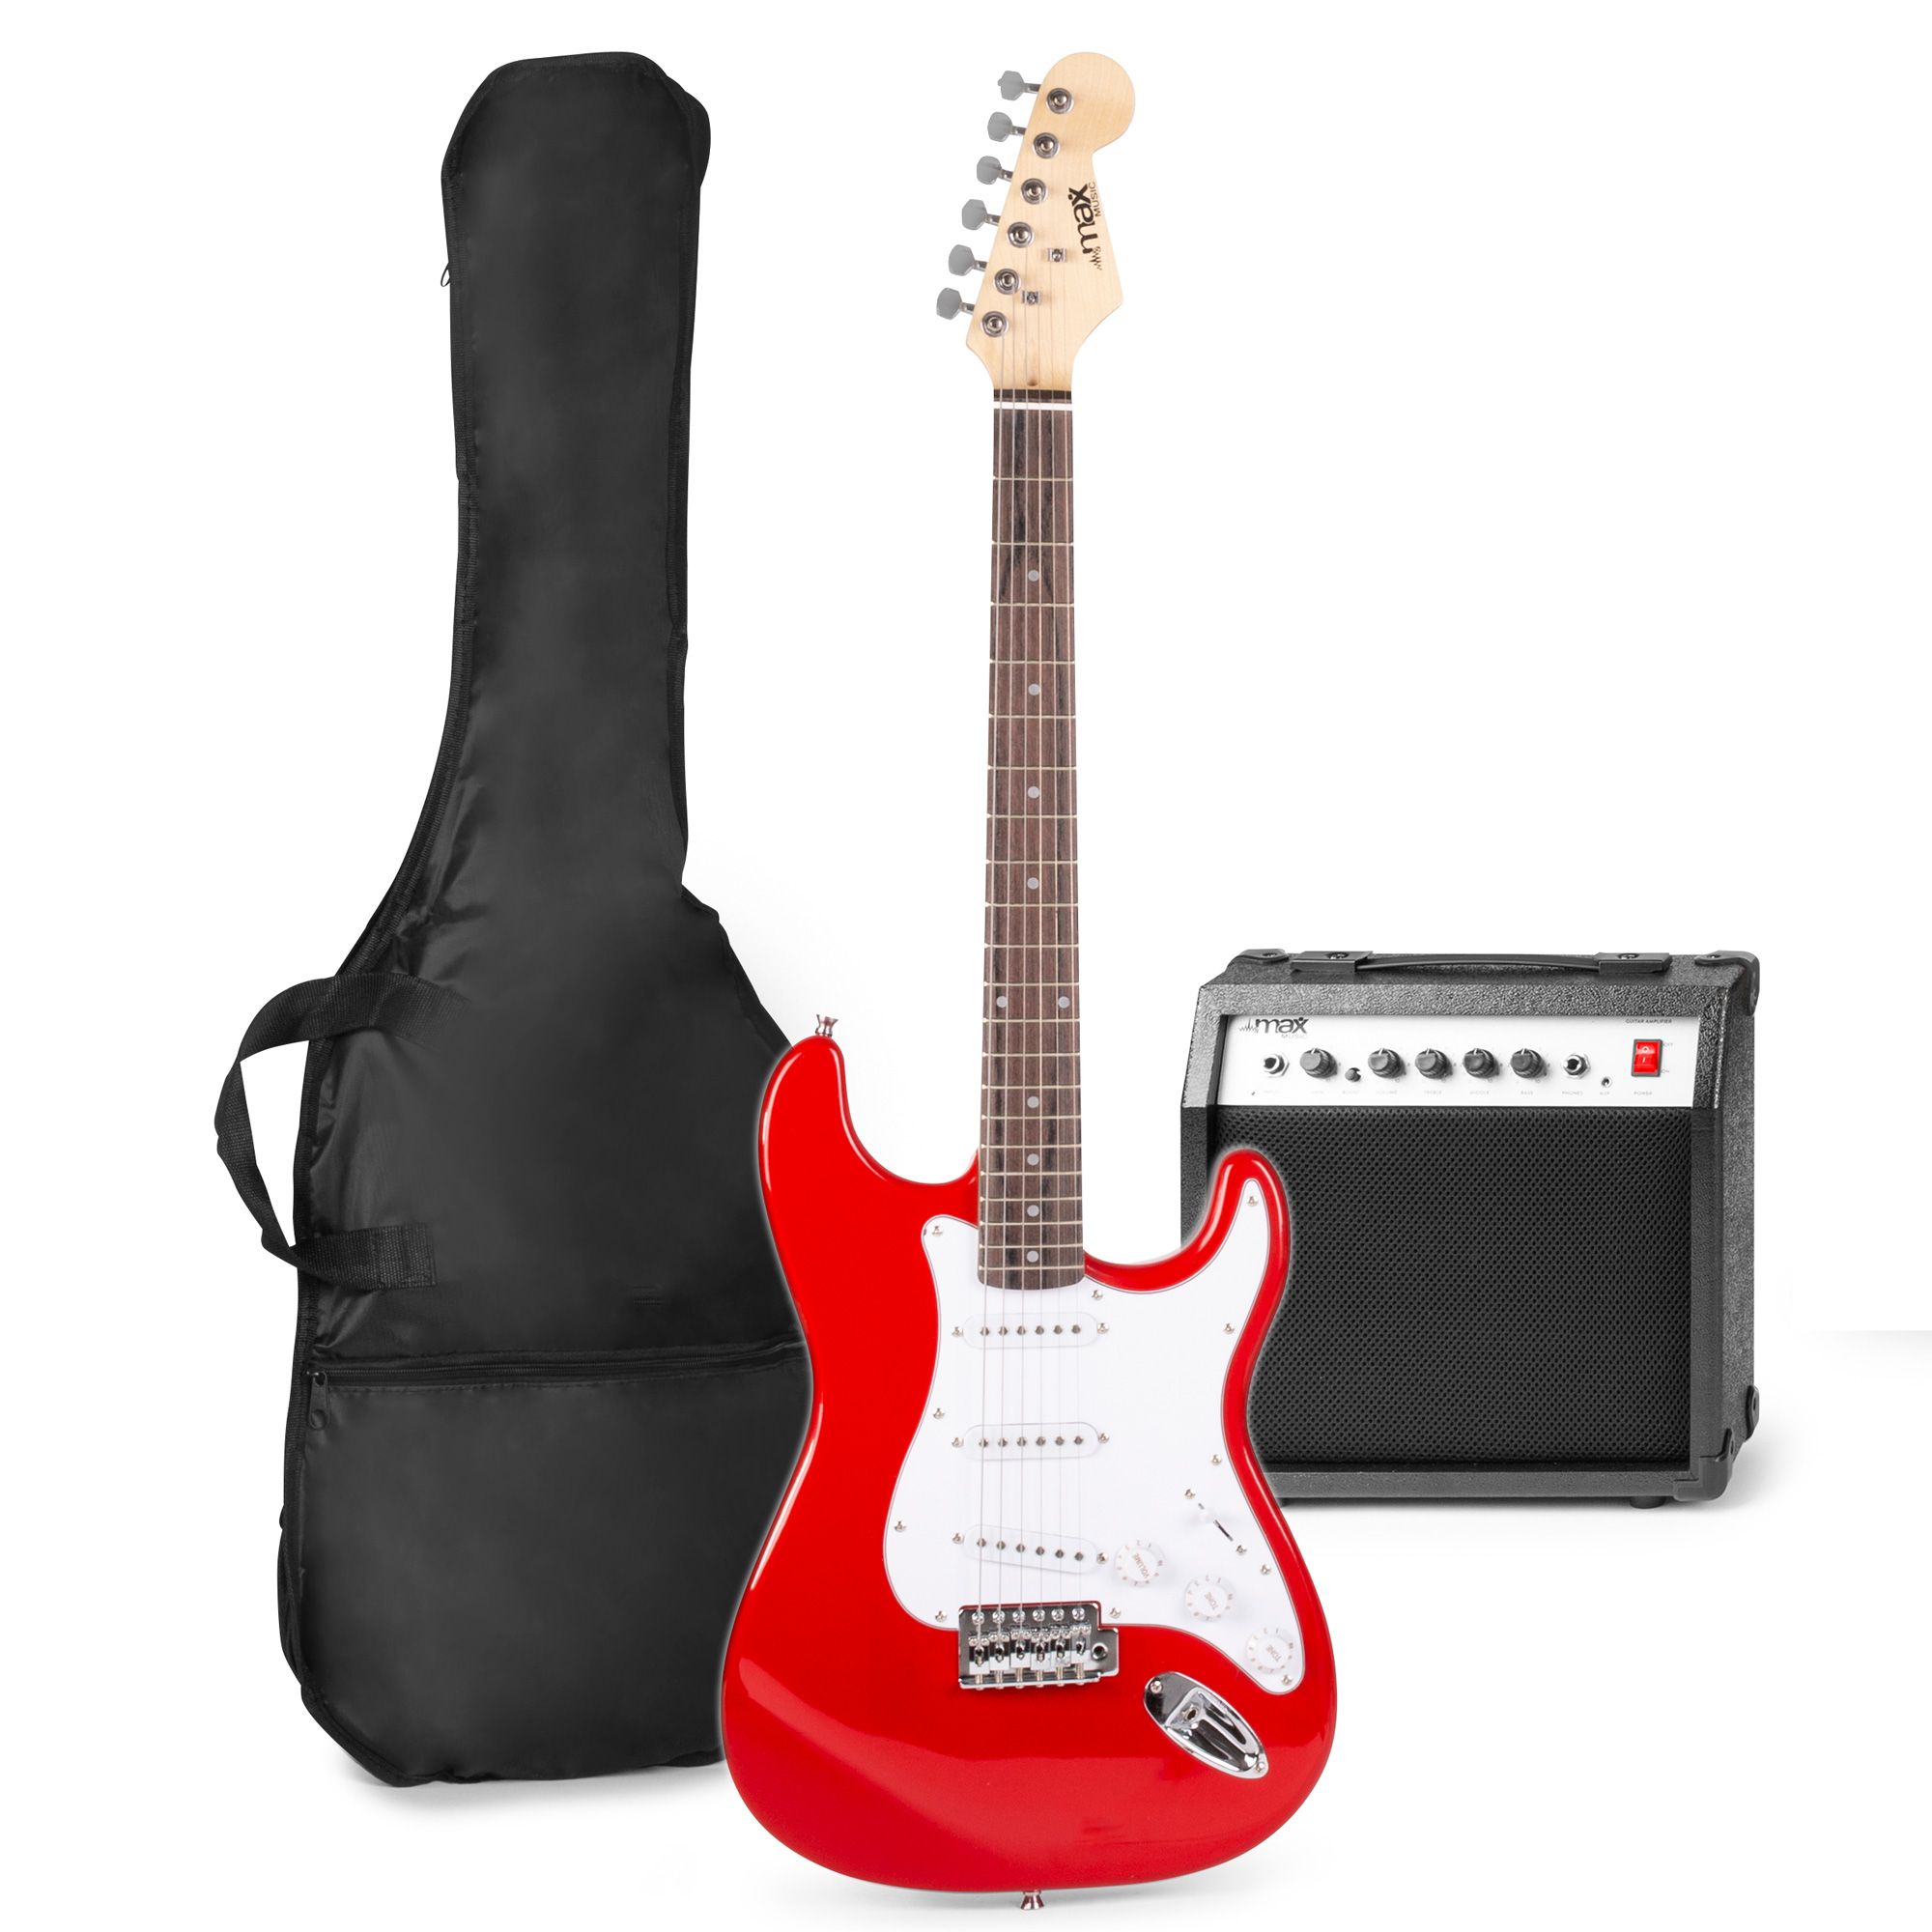 Elektrische gitaar met gitaar versterker - MAX Gigkit - Perfect voor beginners - incl. gitaar stemapparaat, gitaartas en plectrum - Rood